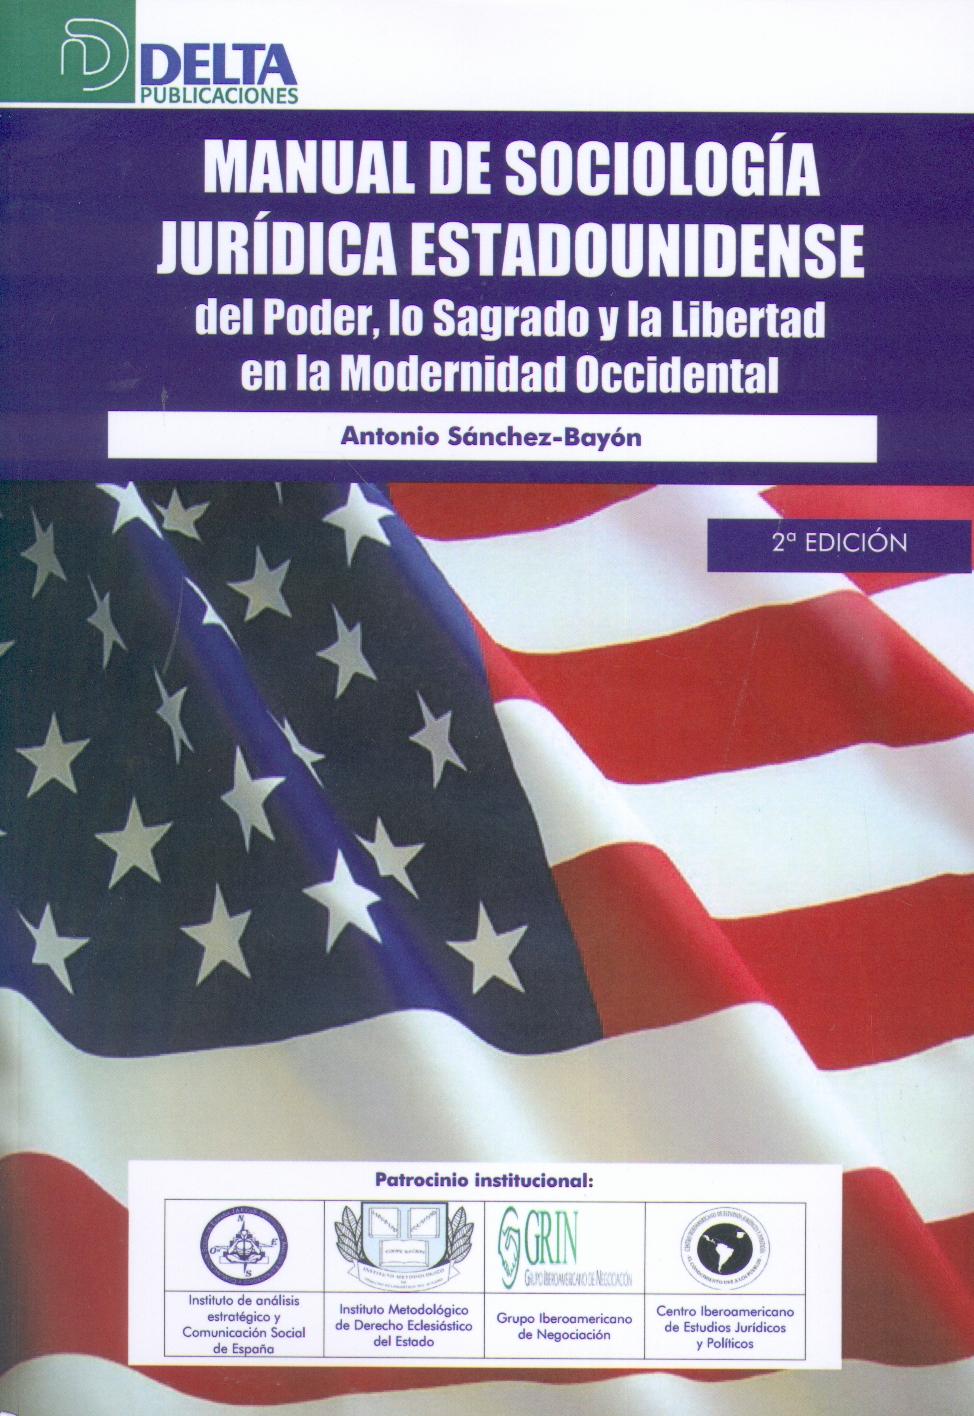 Manual de Sociología Jurídica Estadounidense